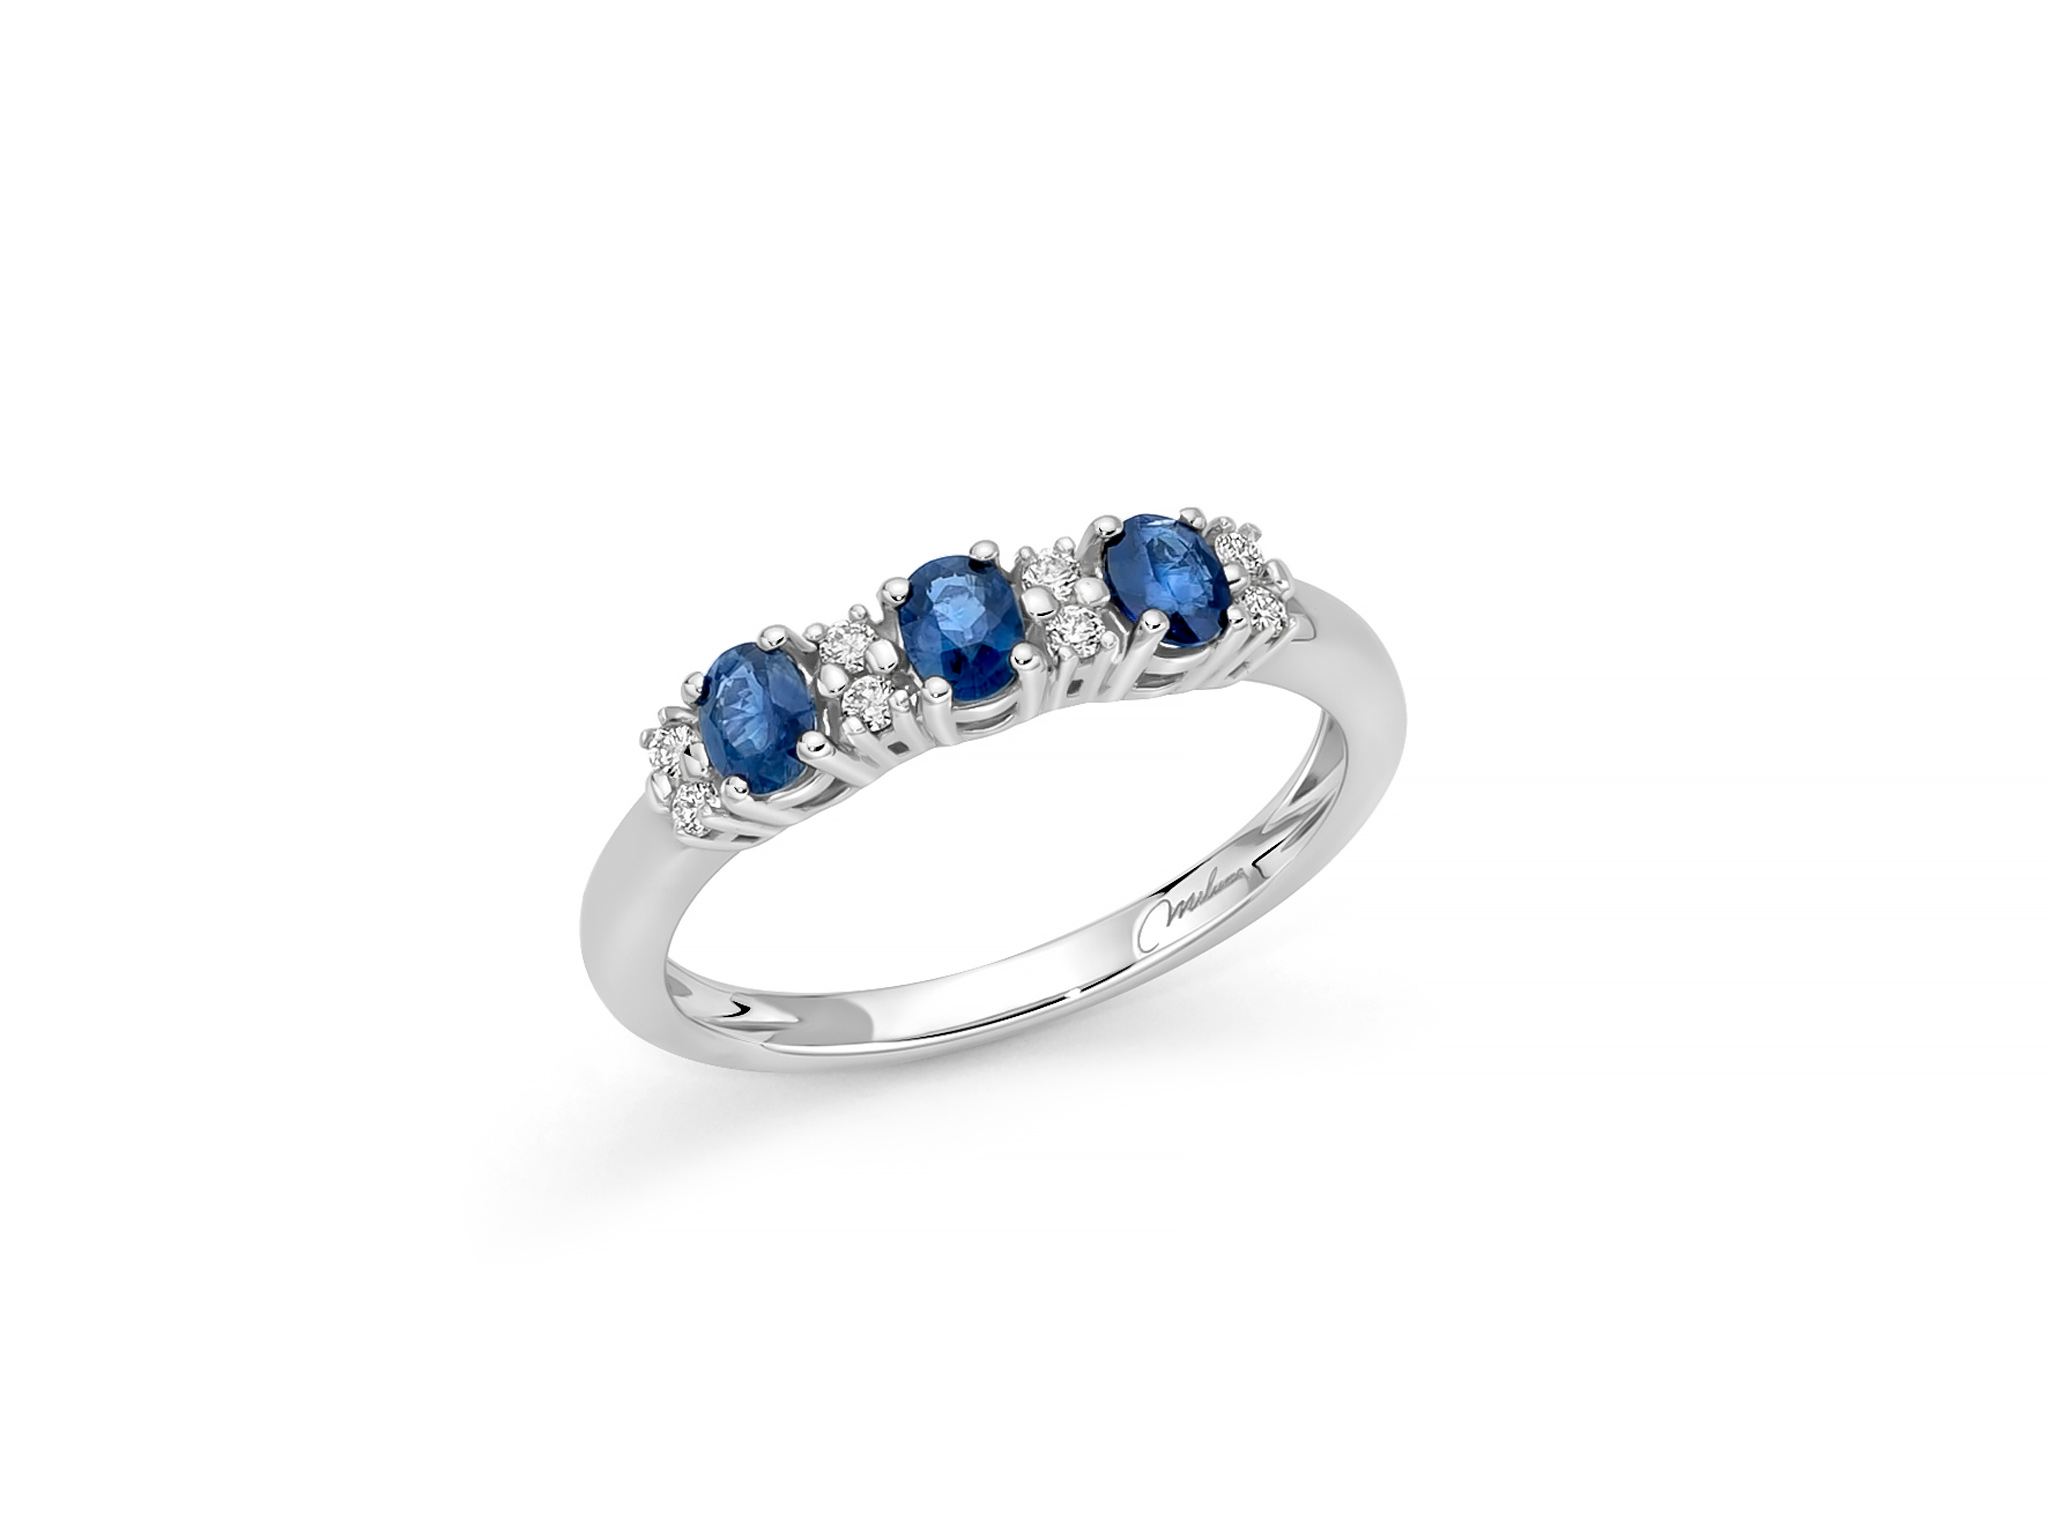 Anello in oro bianco con zaffiri blu ovali e diamanti - LID3758